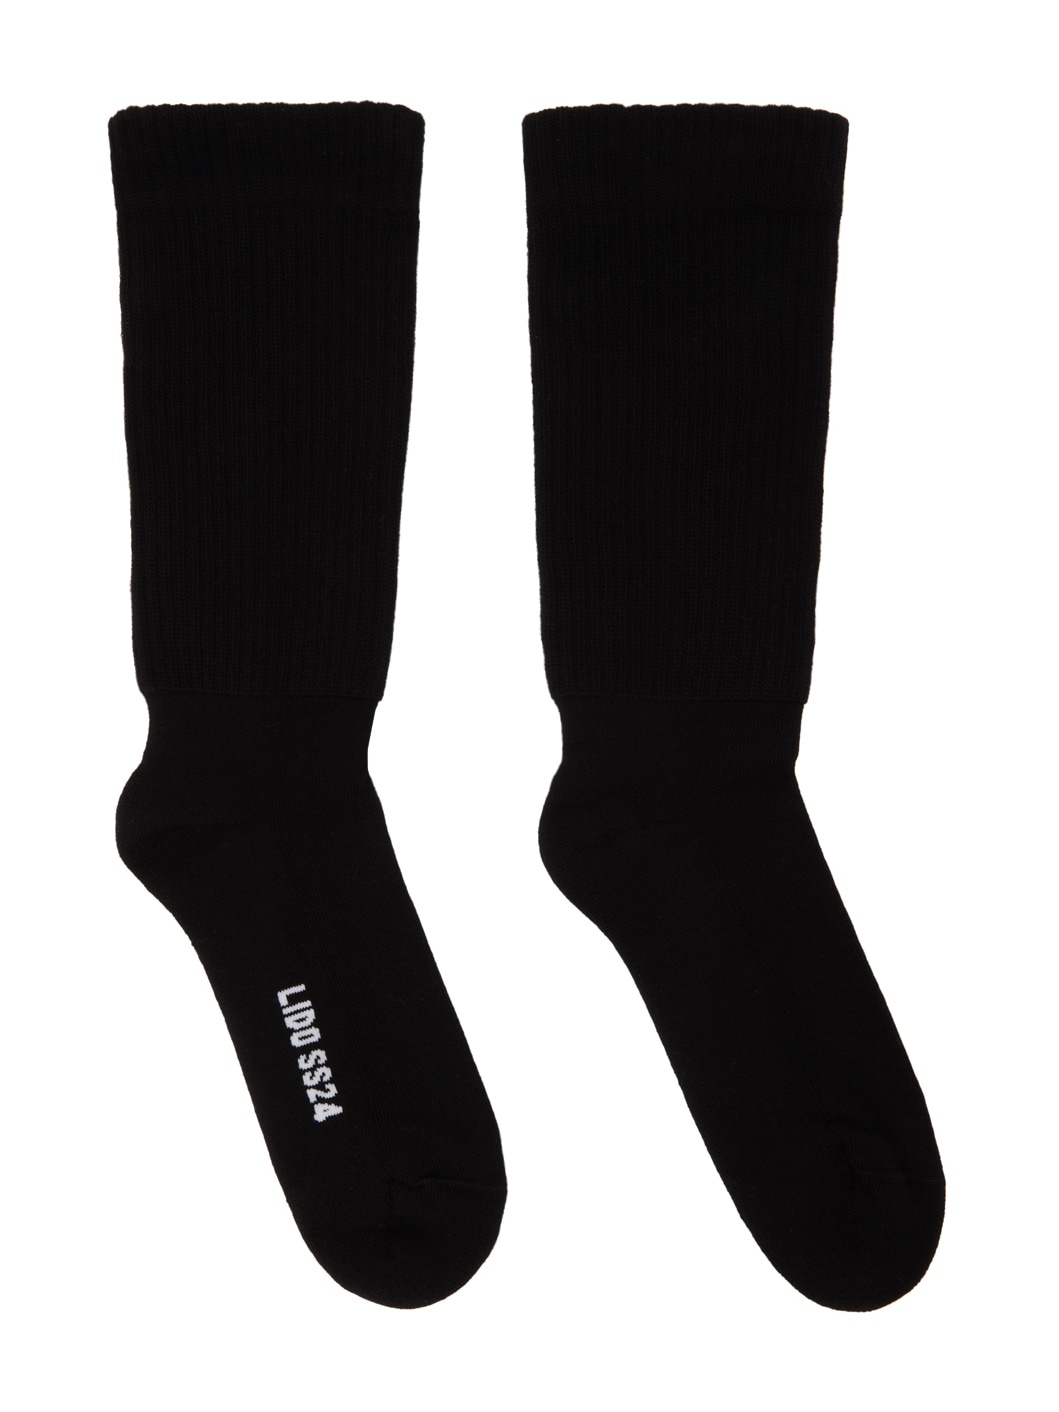 Black Mid Calf Socks - 1